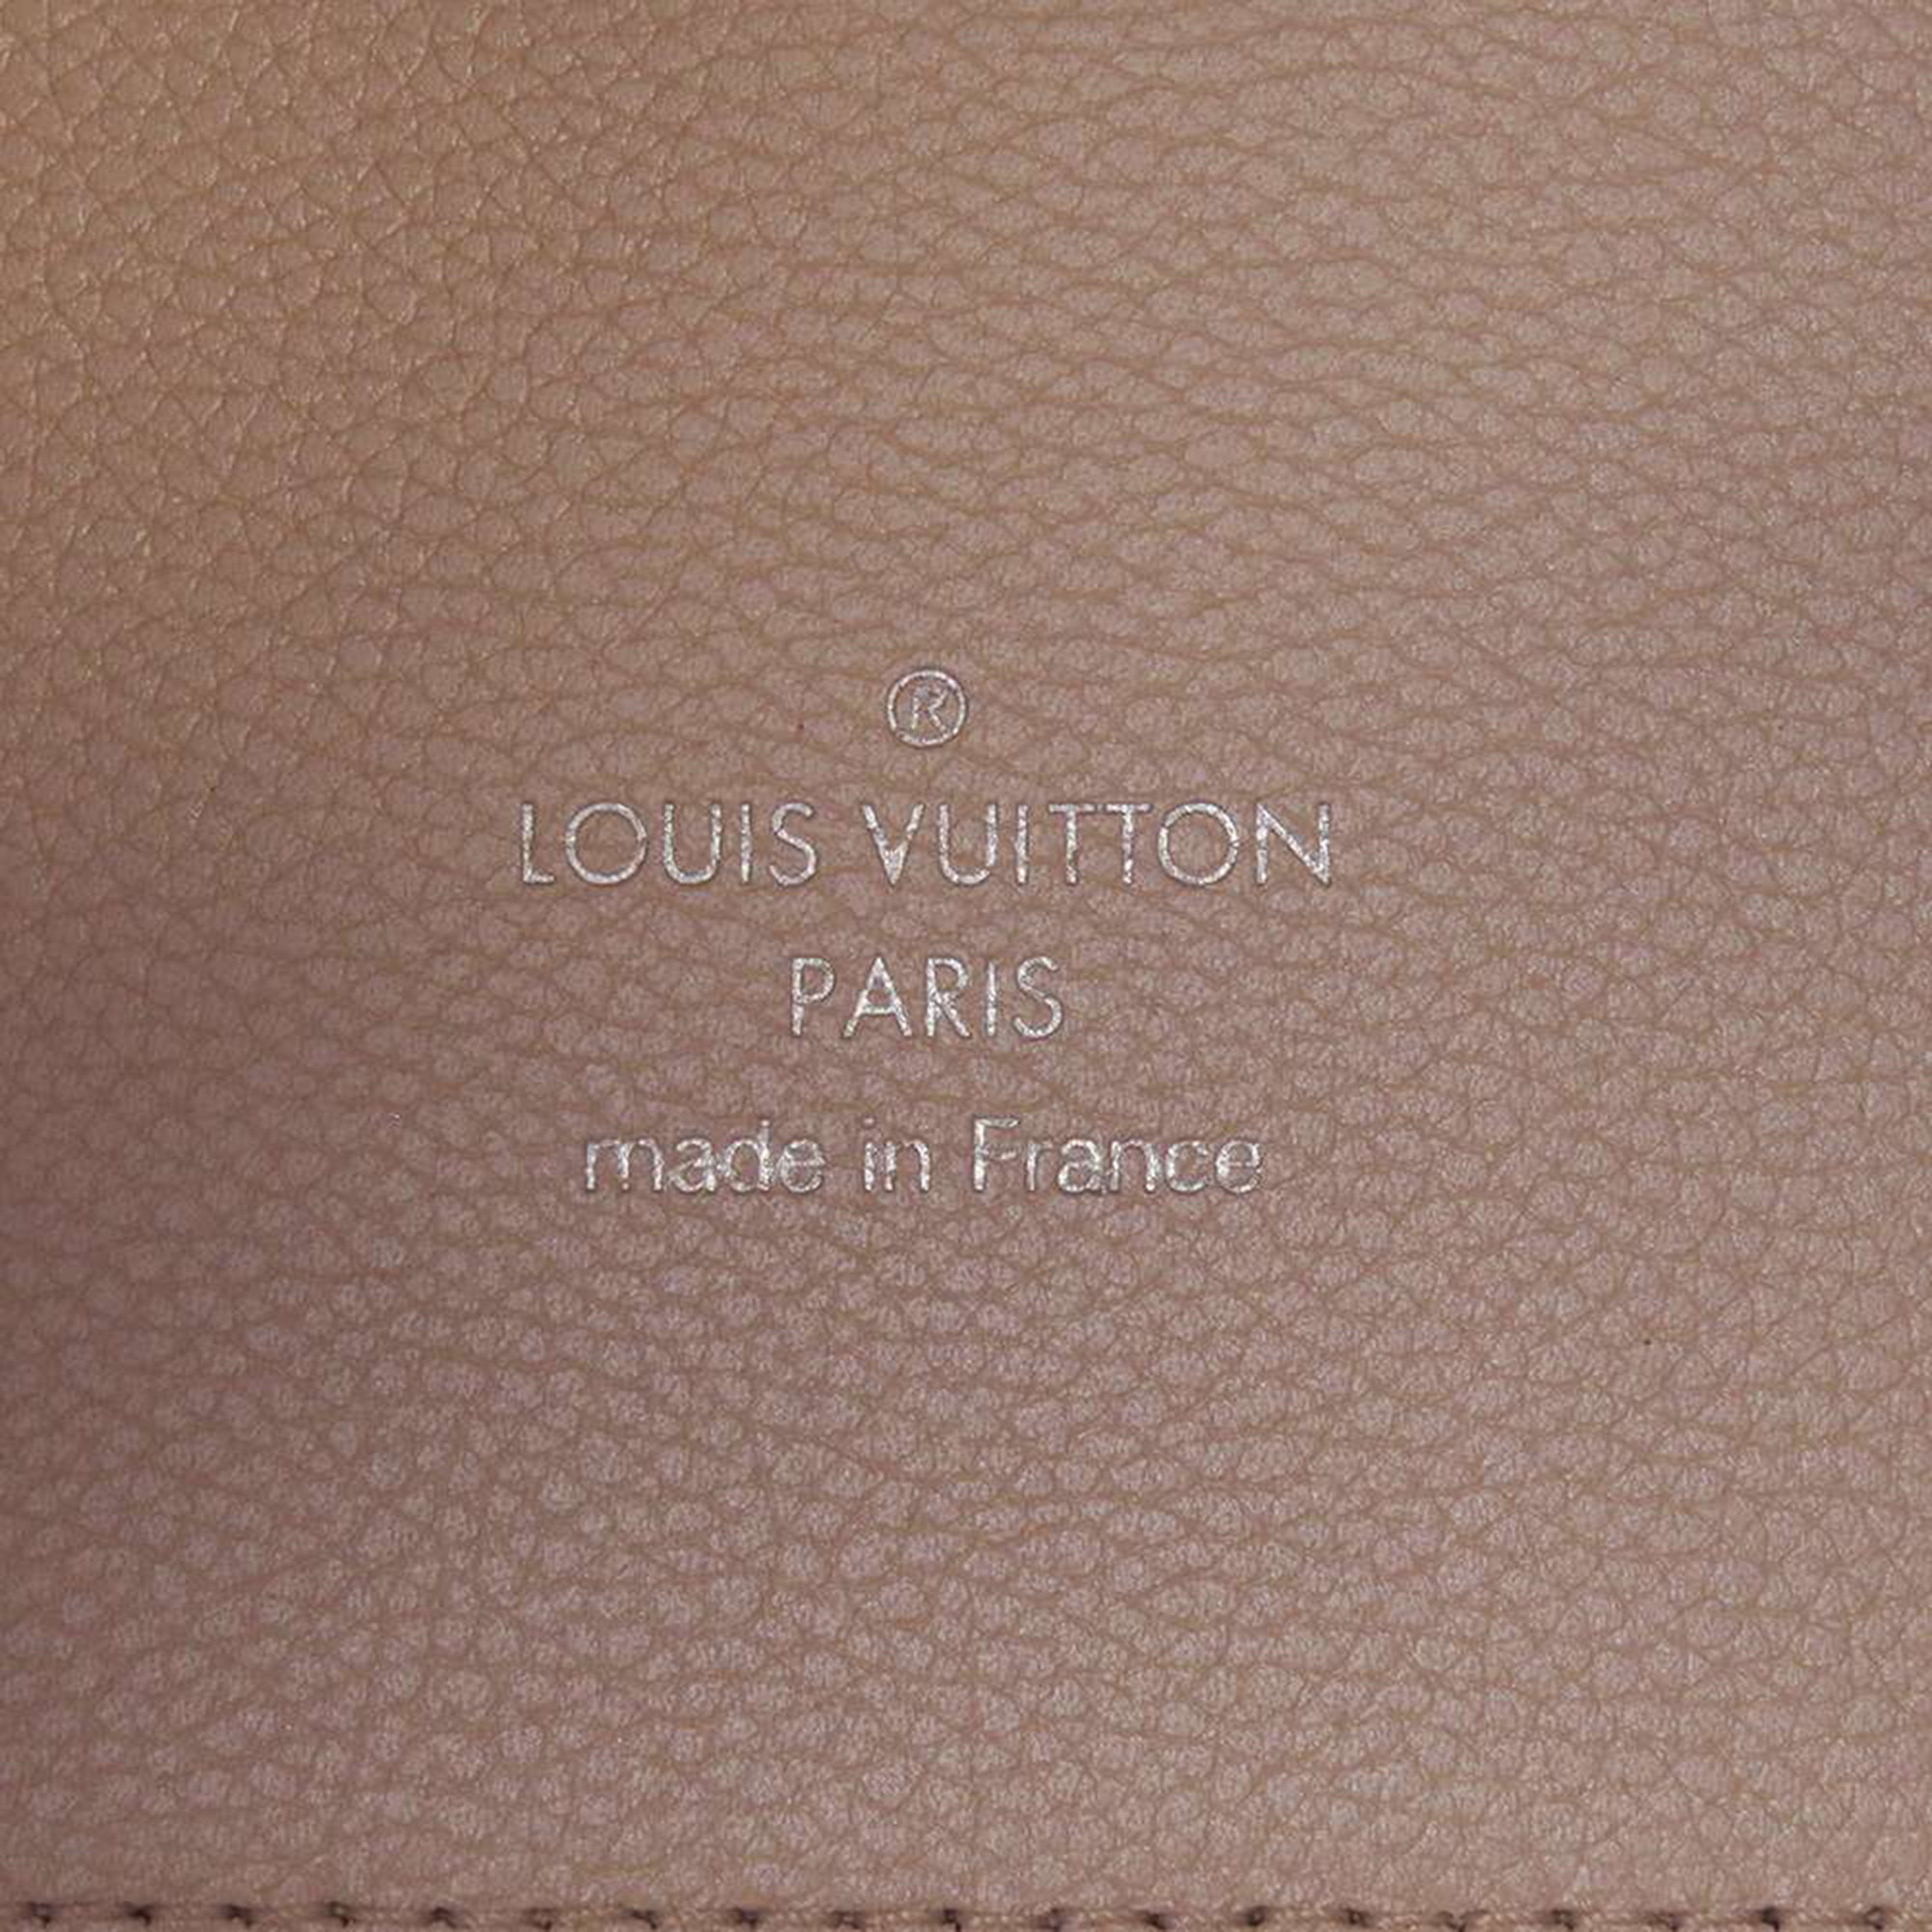 Louis Vuitton Beige Monogram Mahina Hina PM Bag